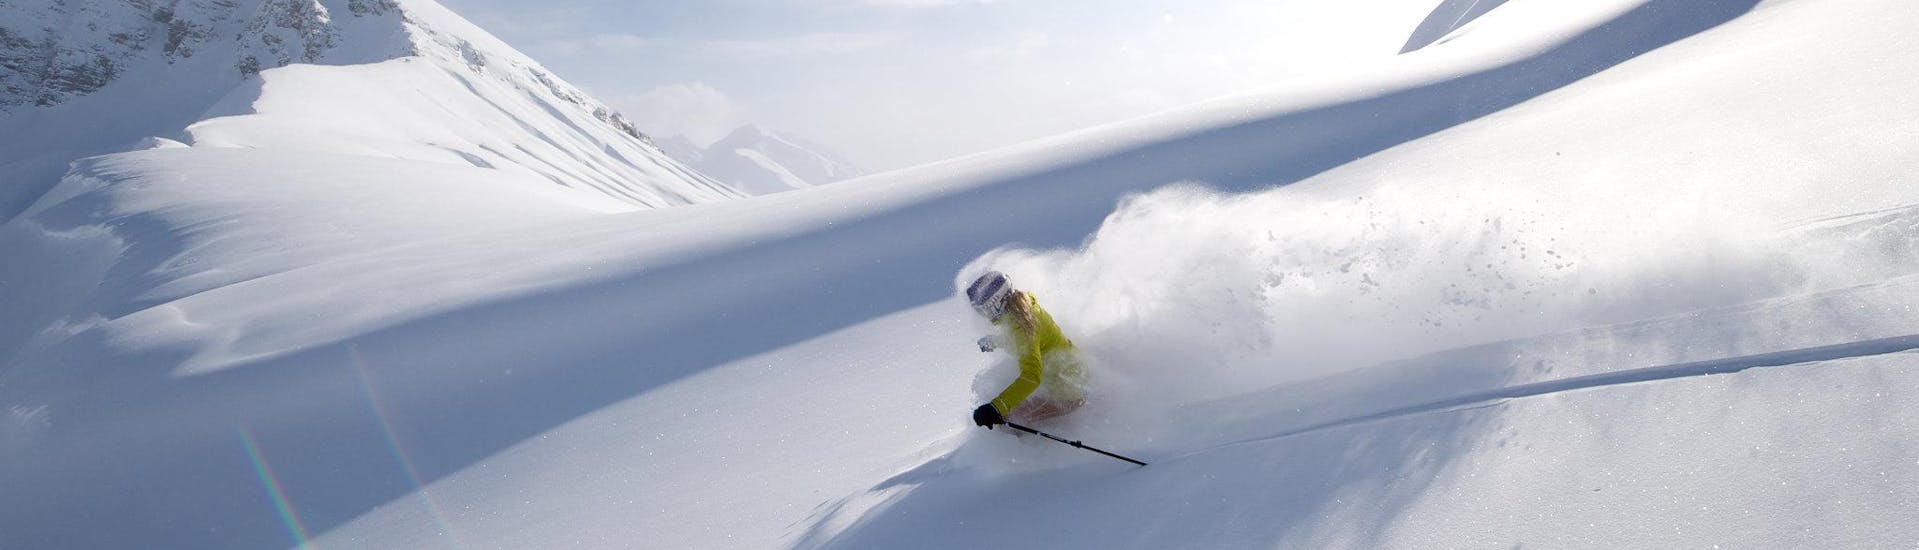 Une personne effectue une descente en ski hors-piste.